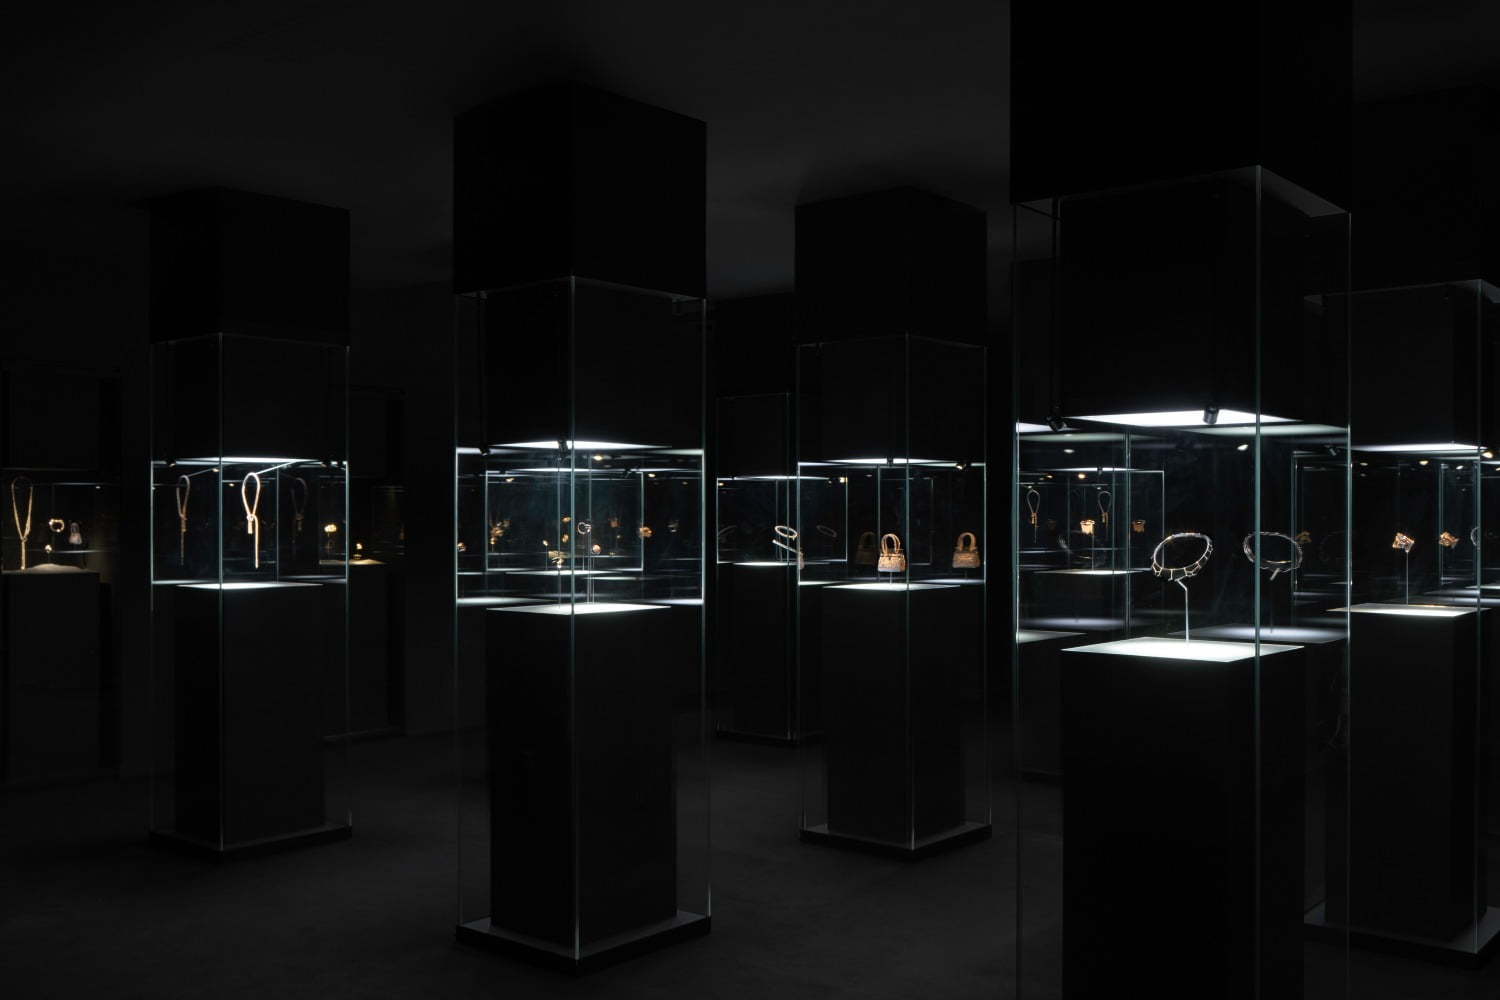 エルメス 闇と光 を表現した新作ジュエリー ブラック トゥー ライト 銀座メゾンエルメスで公開 ファッションプレス